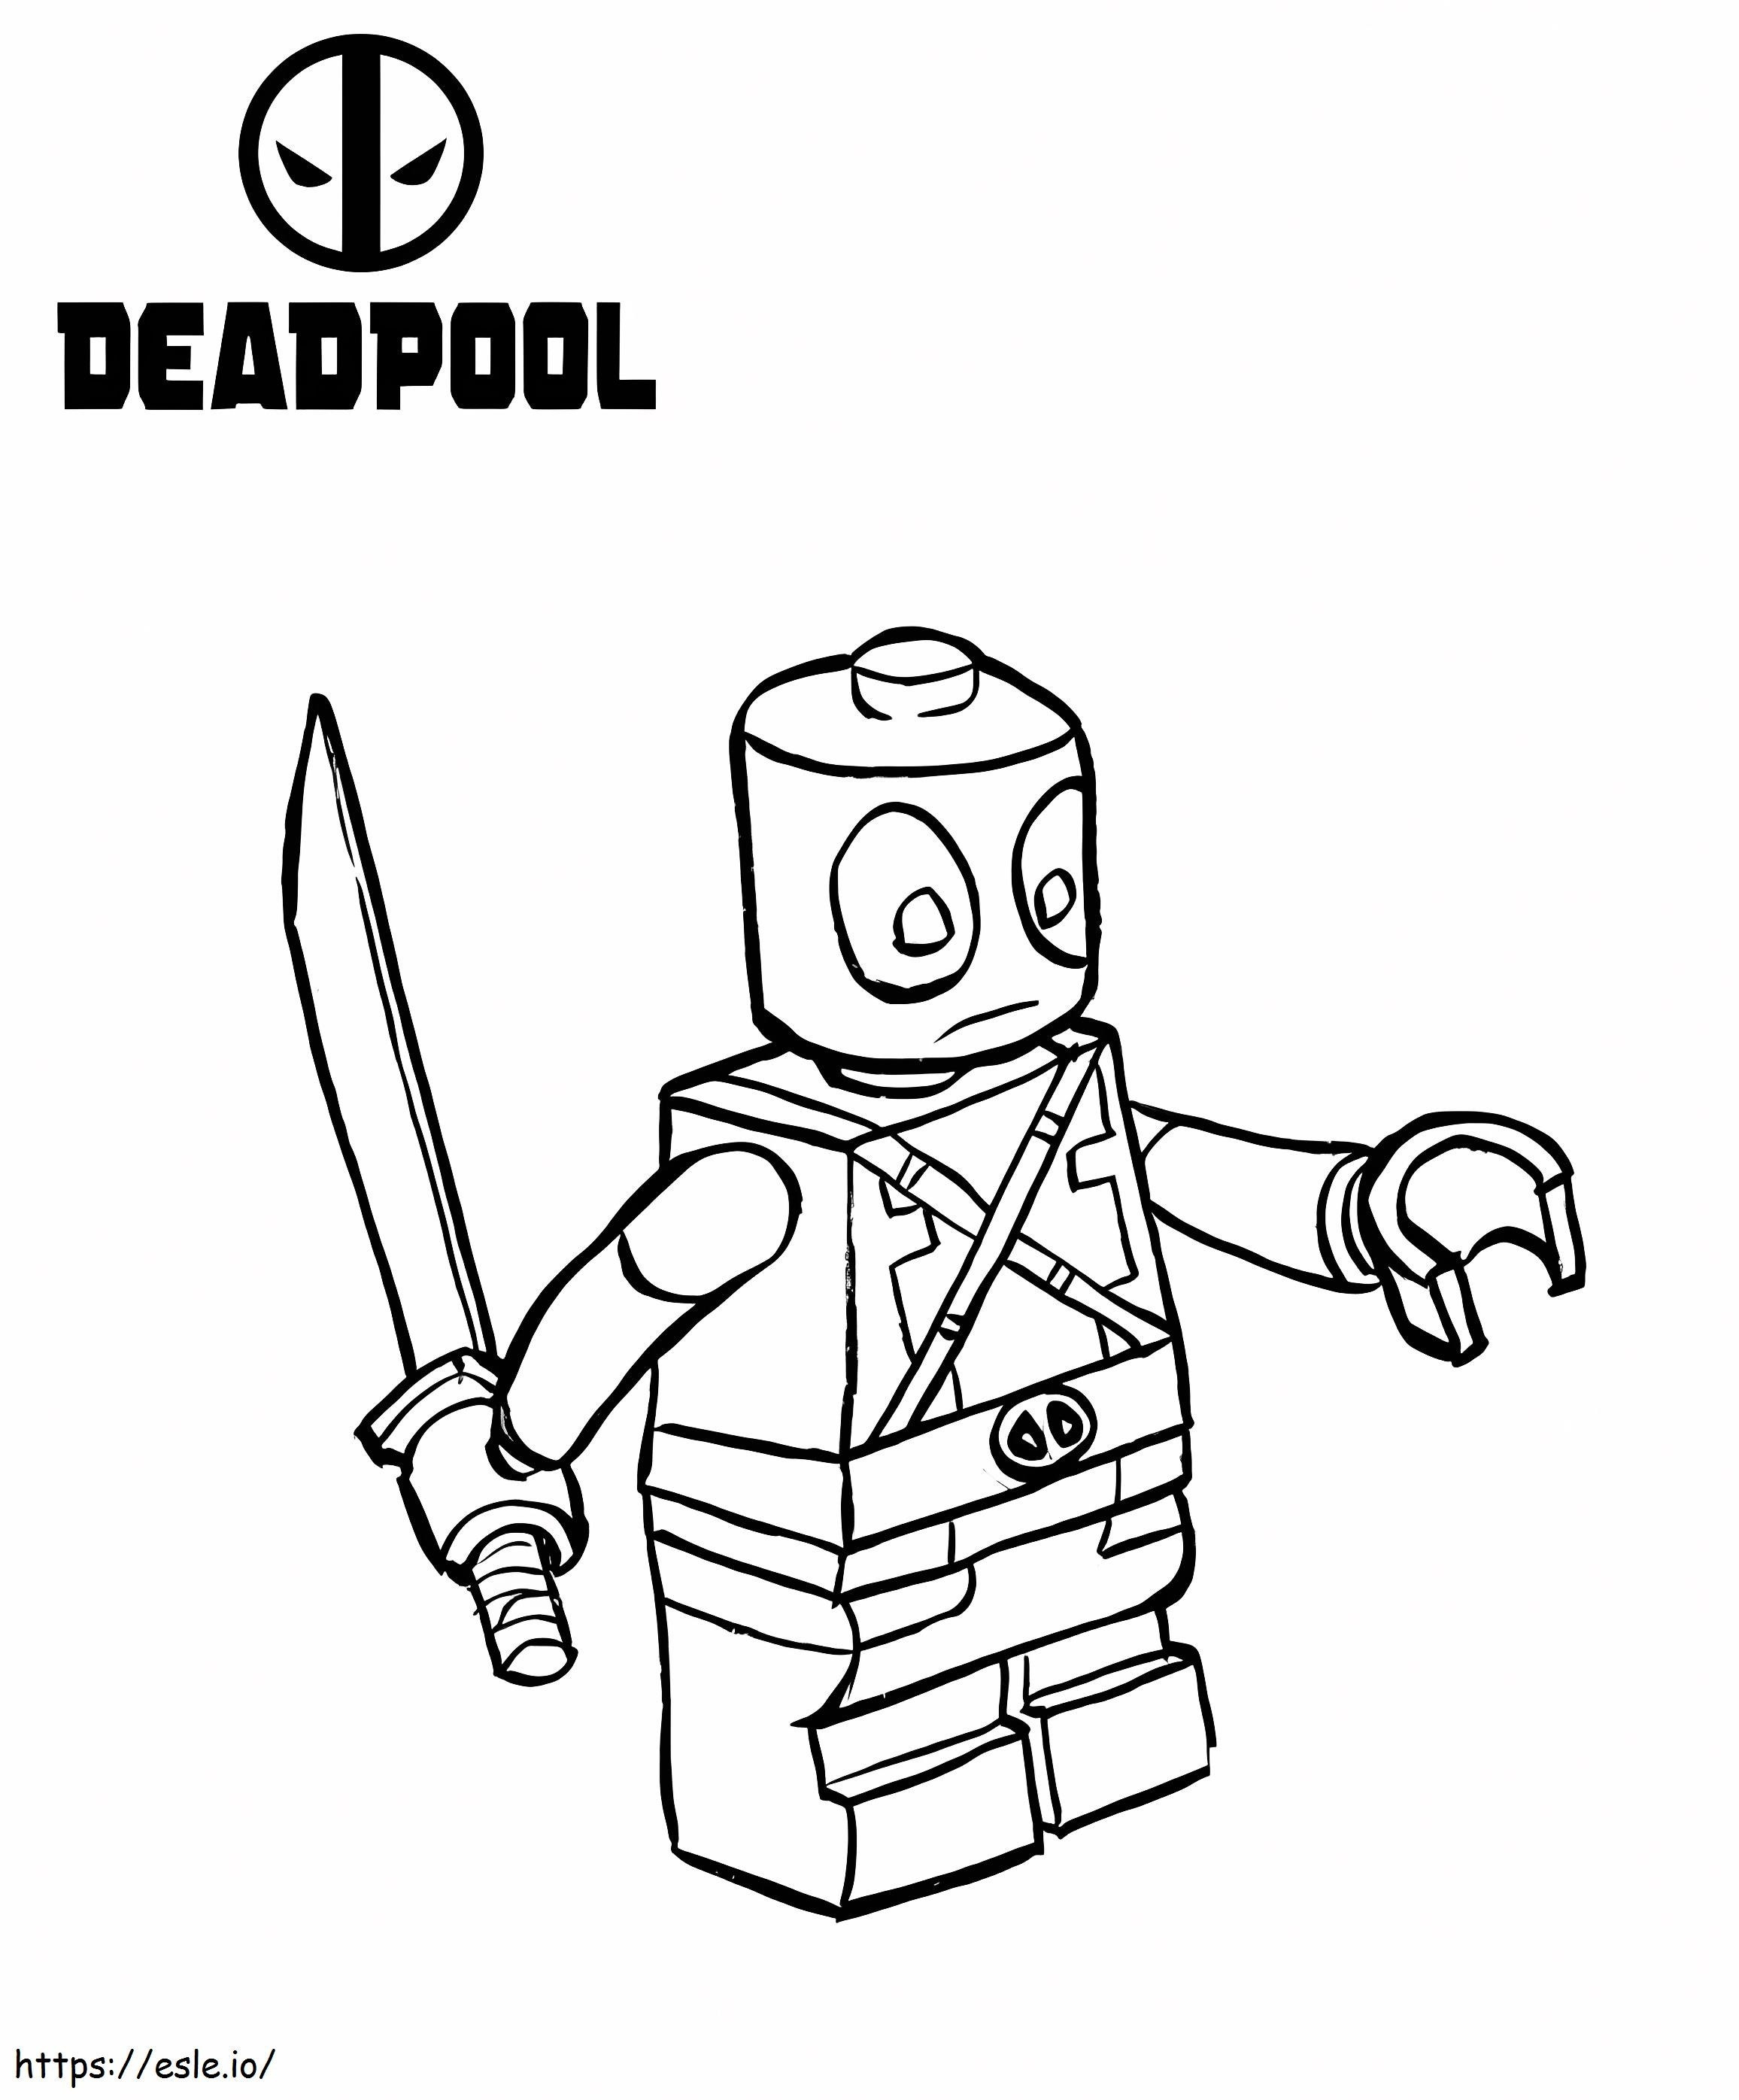 Zabawny Deadpool z Lego kolorowanka